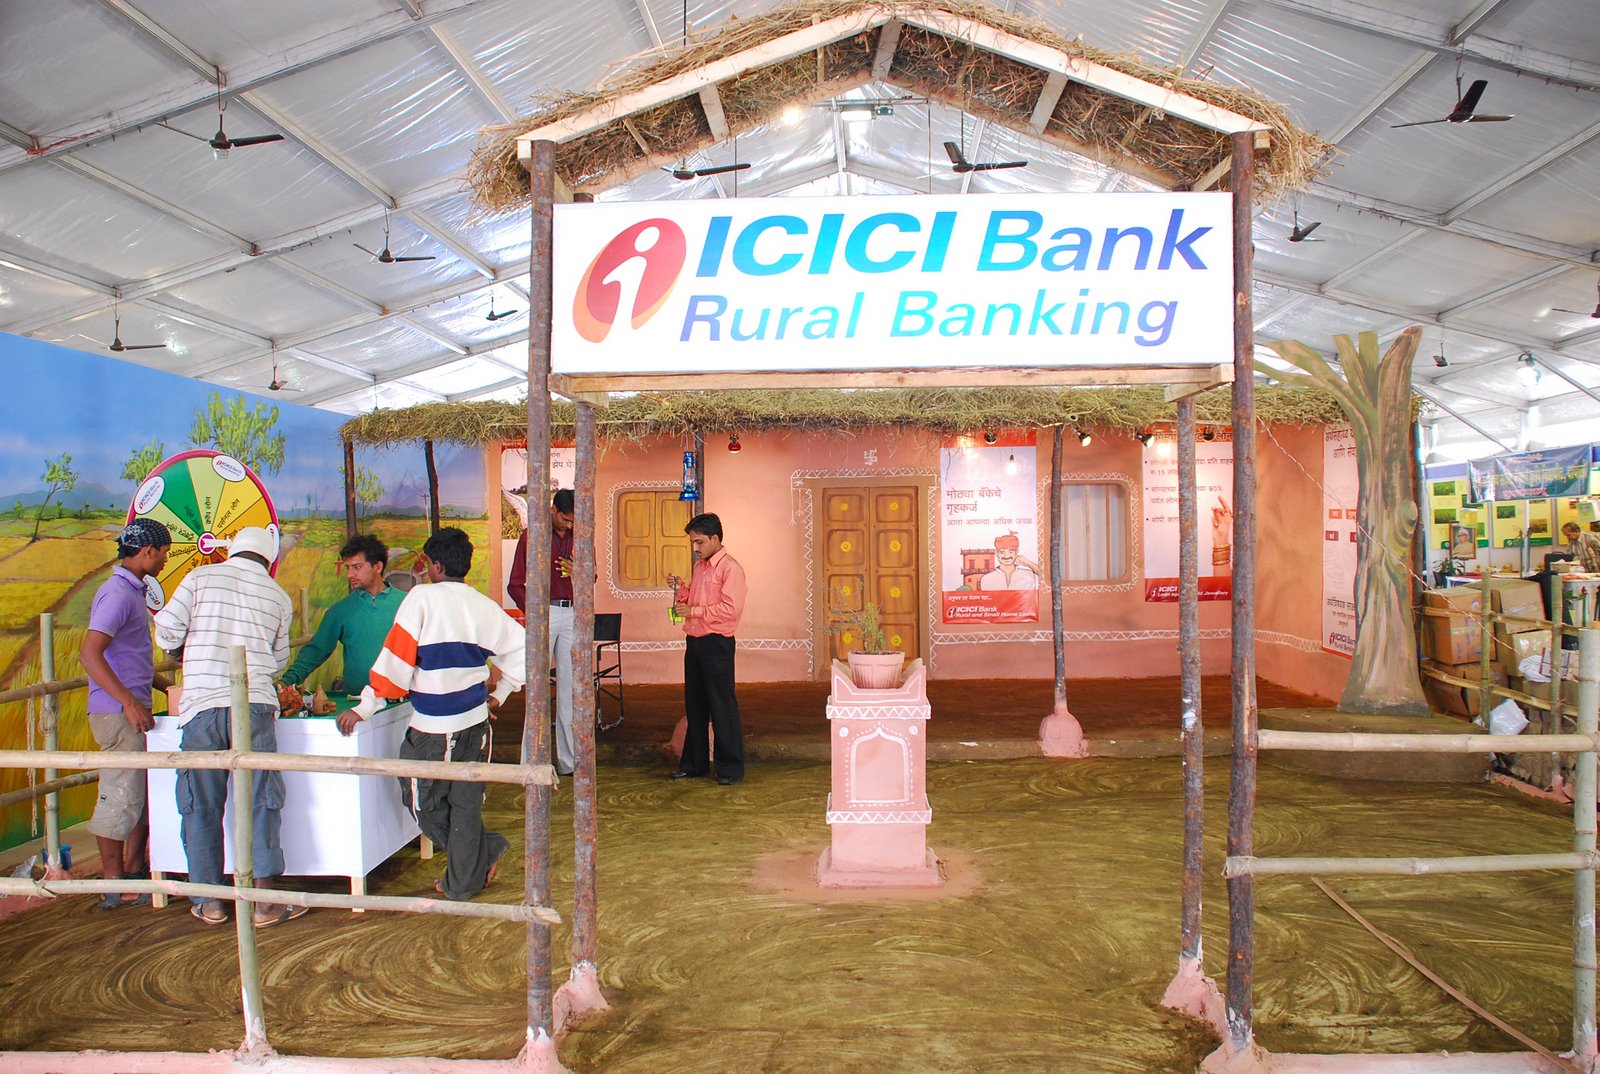 Rural Banking, Rural